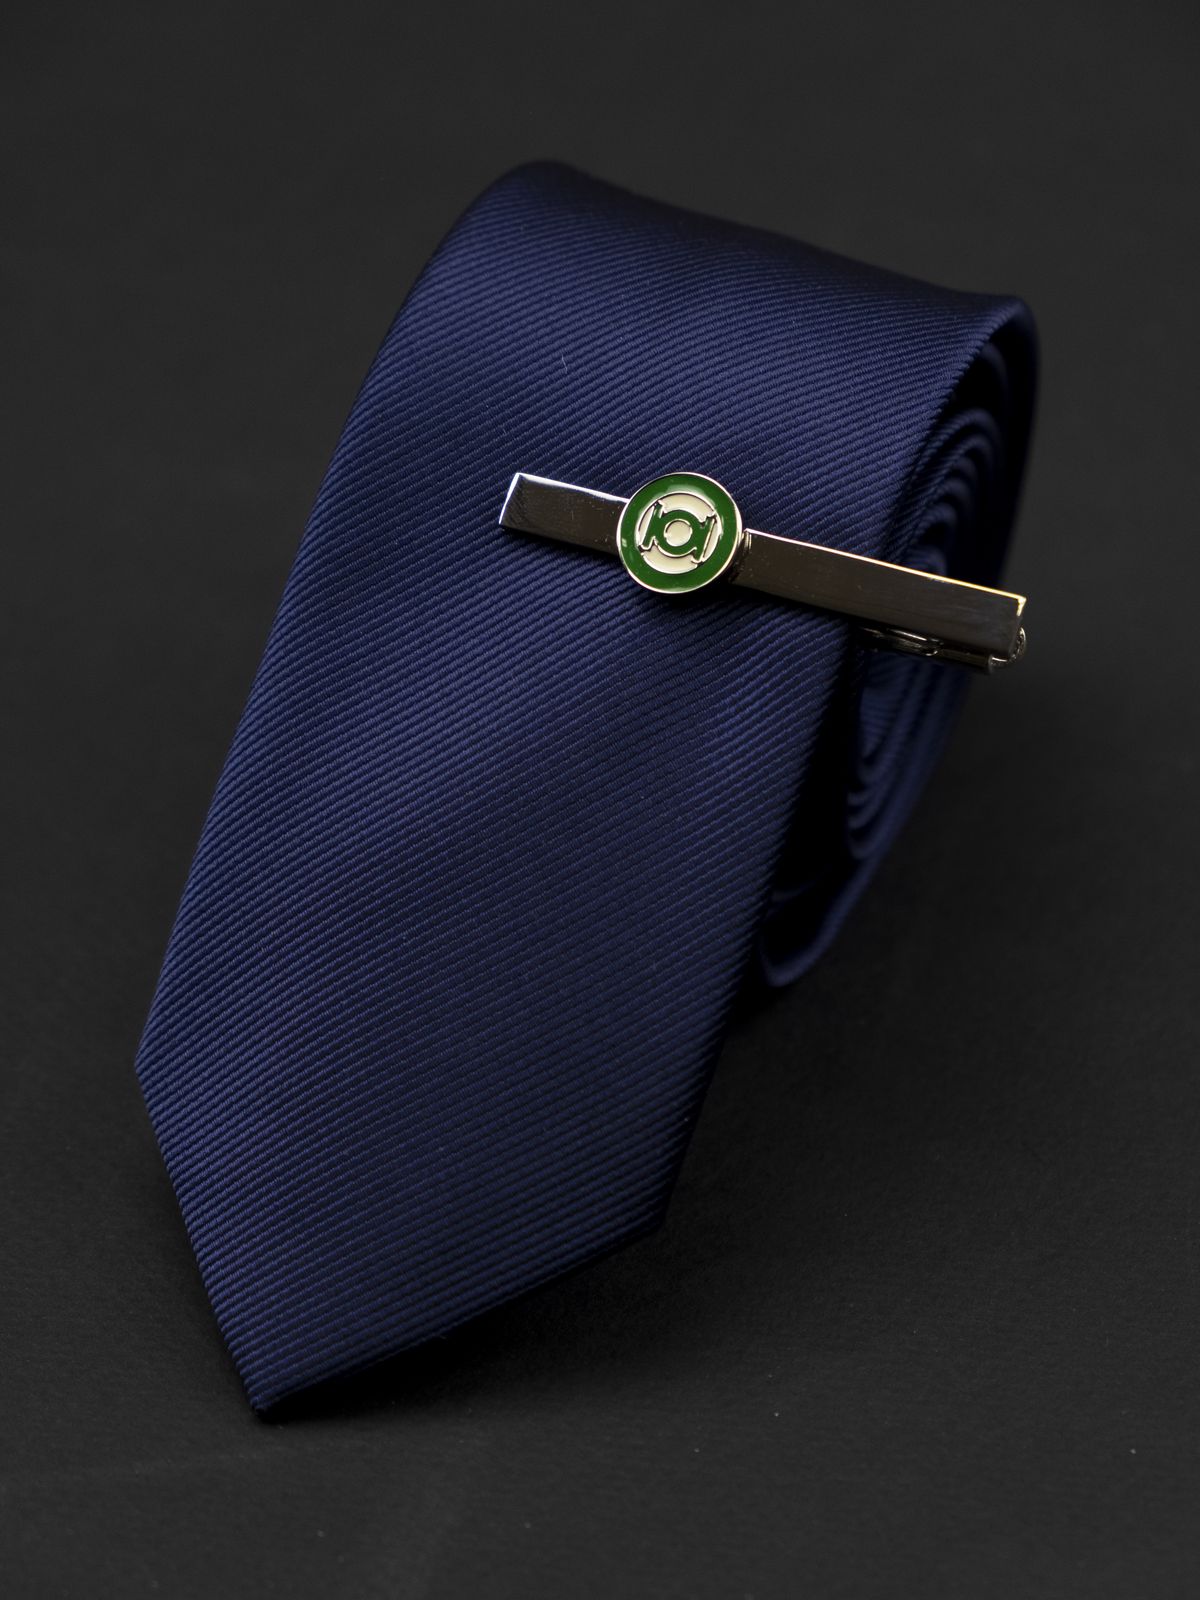 Зажим для галстука Зеленый Фонарь (Green Lantern)  купить. Состав: Эмаль Ювелирная сталь 316L, Цвет: Стальной, зеленый, Габариты: 55 мм х 5 мм (лого диаметр 13 мм), Вес: 12 гр.; 